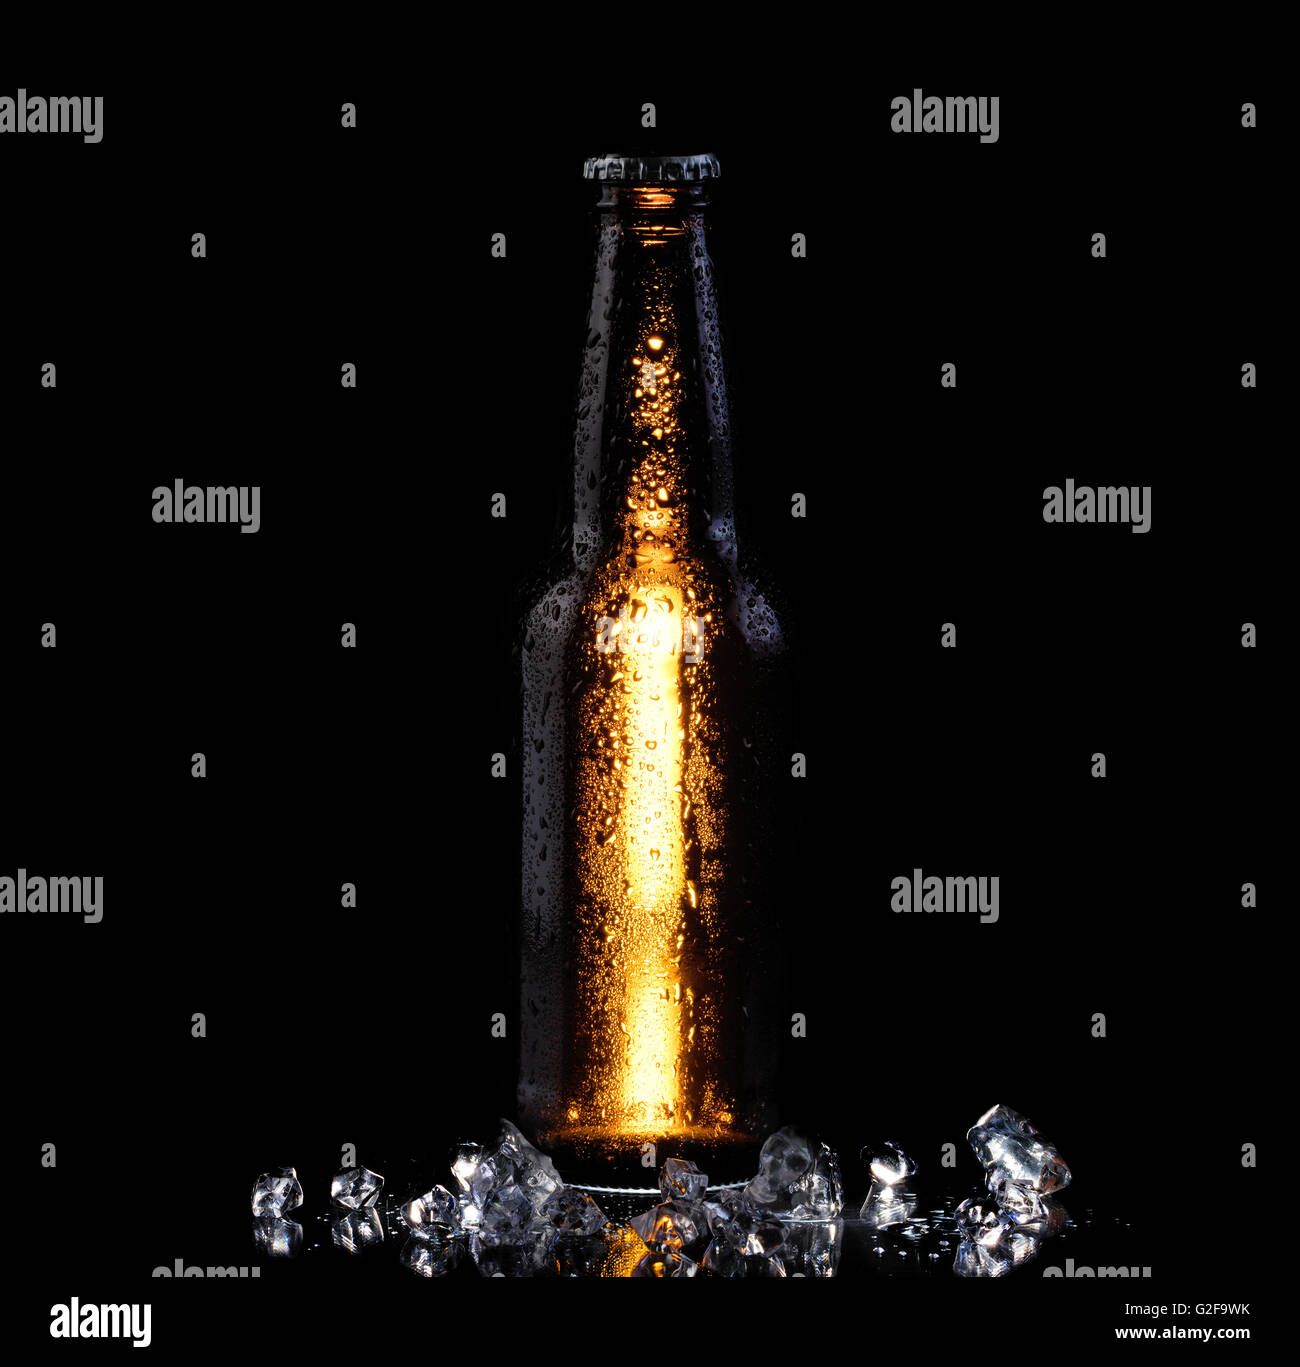 Bierflasche mit Kondensation und Eis auf schwarzem Hintergrund. Vertikalen Layout. Stockfoto